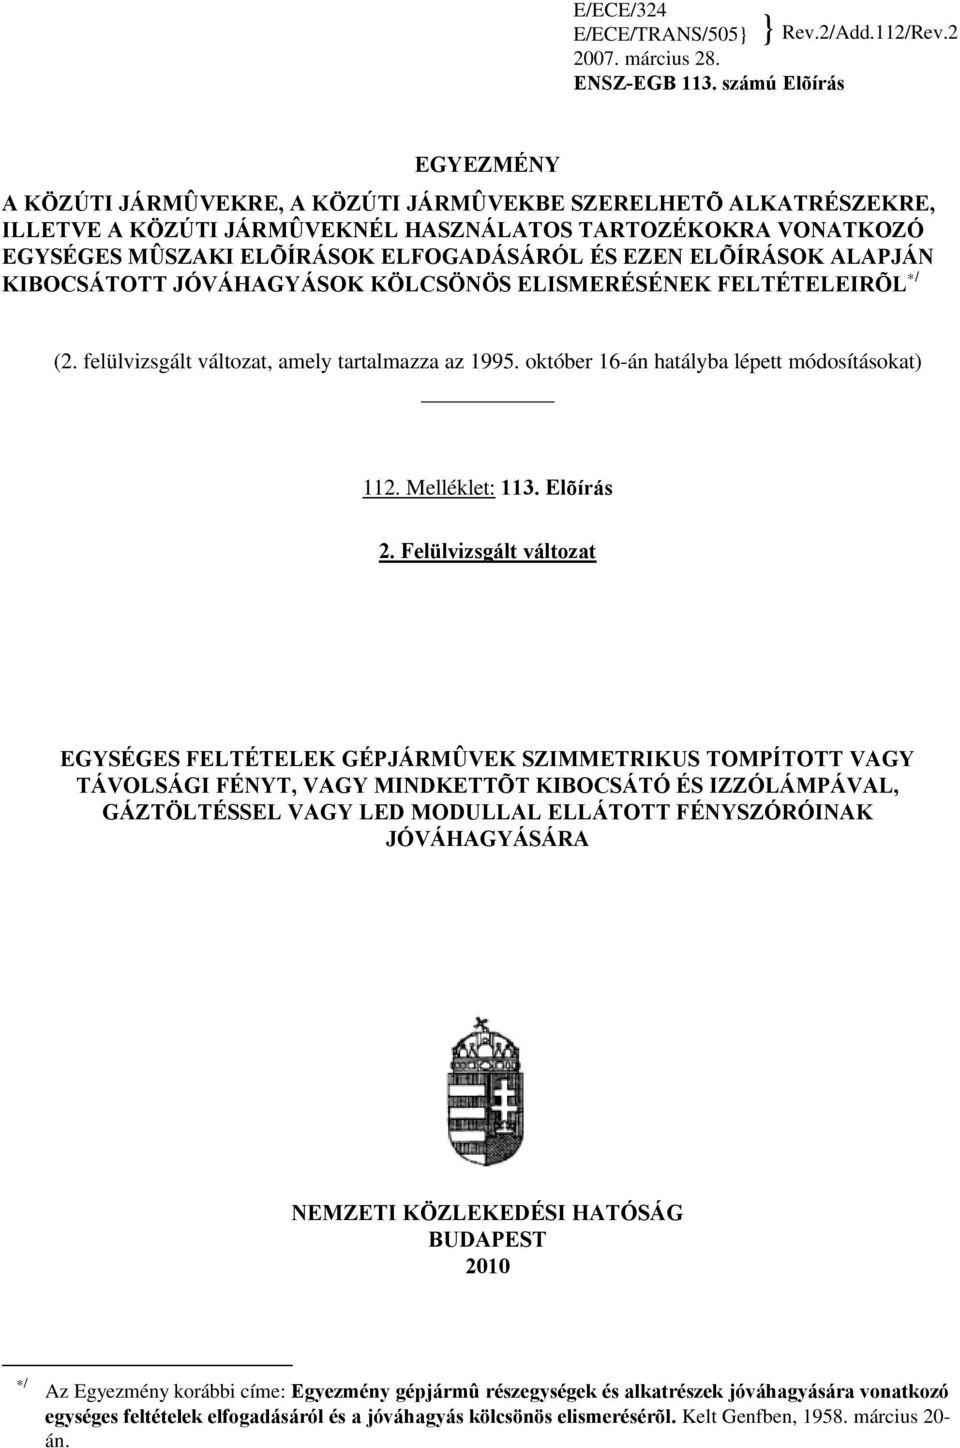 EZEN ELÕÍRÁSOK ALAPJÁN KIBOCSÁTOTT JÓVÁHAGYÁSOK KÖLCSÖNÖS ELISMERÉSÉNEK FELTÉTELEIRÕL */ (2. felülvizsgált változat, amely tartalmazza az 1995. október 16-án hatályba lépett módosításokat) 112.